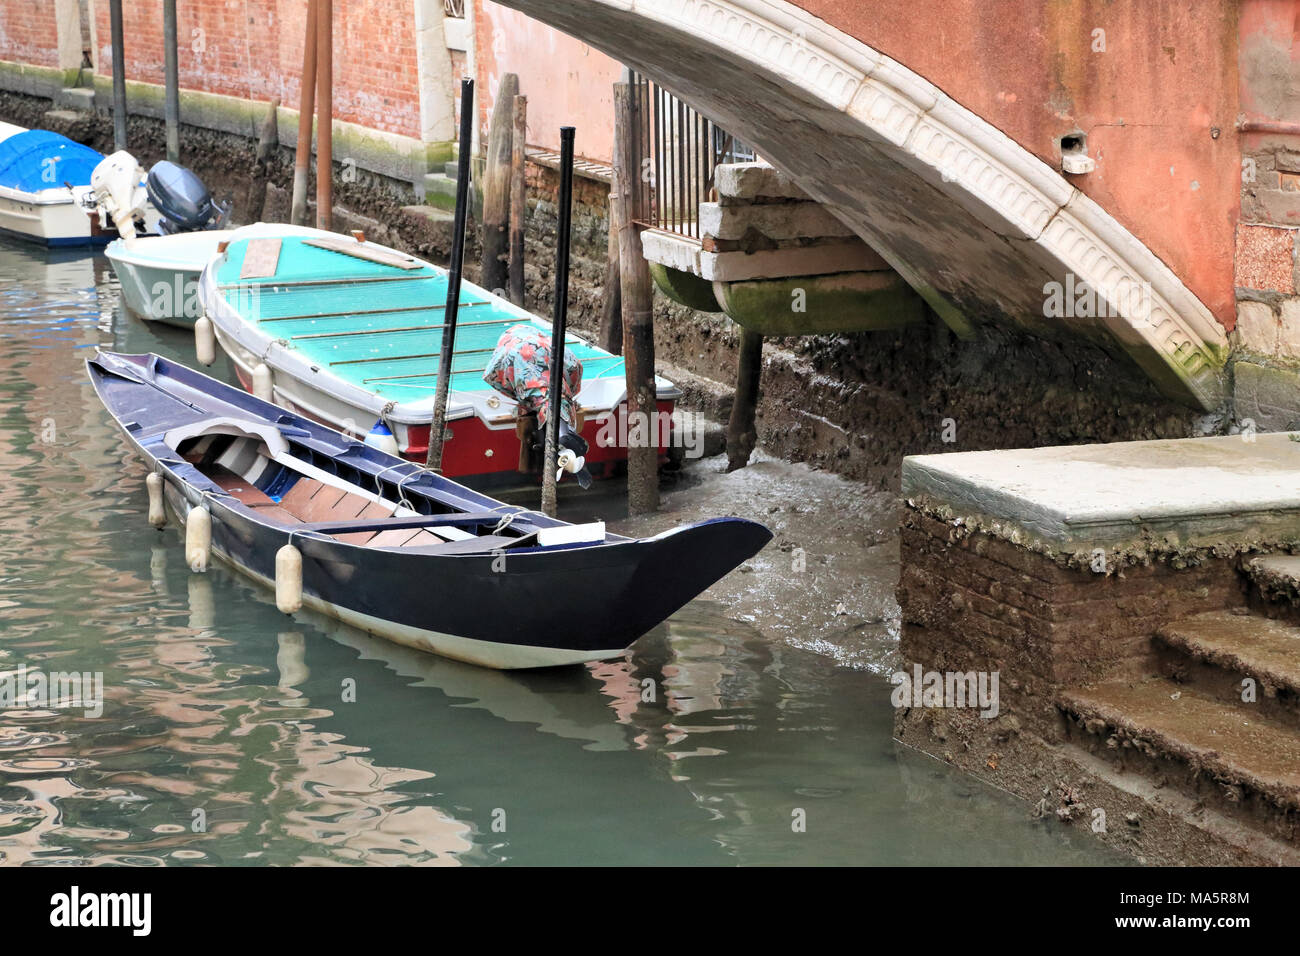 La bassa marea livello acqua in Venezia / Acqua bassa, Venezia Foto Stock